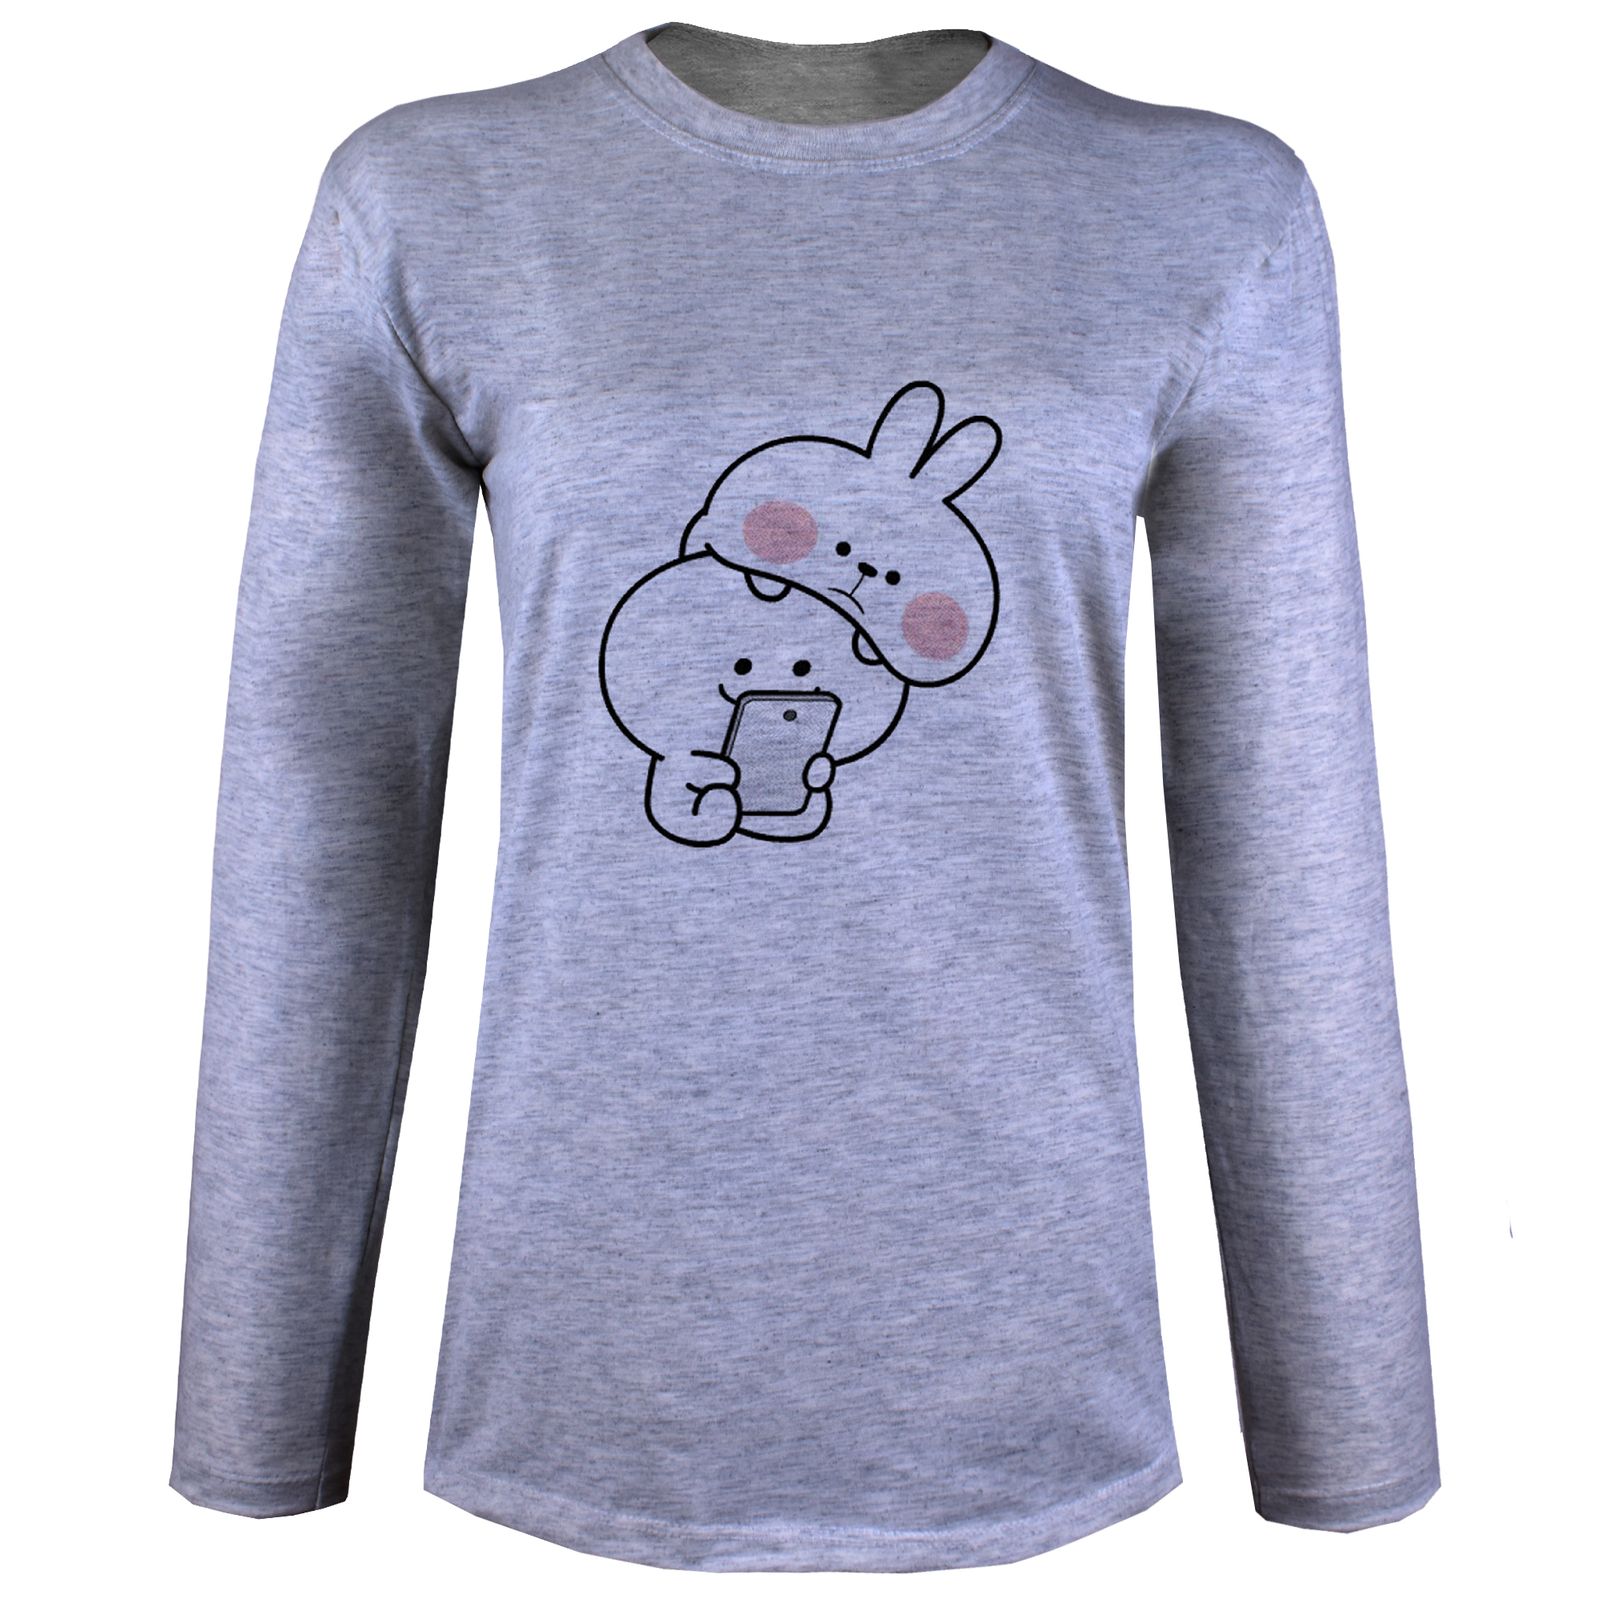 تی شرت آستین بلند زنانه مدل خرگوش X29 -  - 1